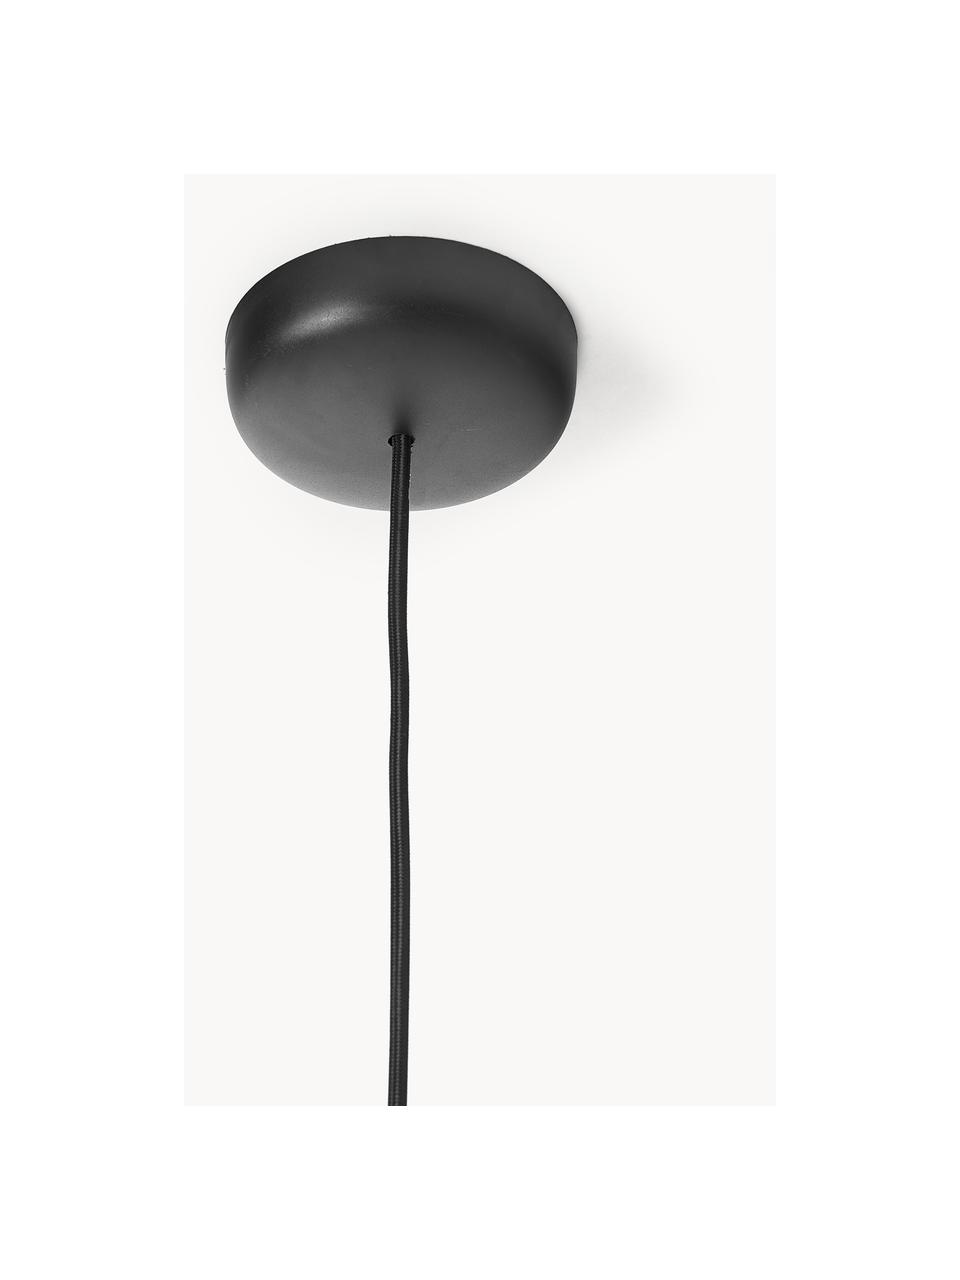 Kleine Kugel-Pendelleuchte Ballbraun, Lampenschirm: Metall, beschichtet, Baldachin: Metall, beschichtet, Rostrot, Ø 18 x H 16 cm